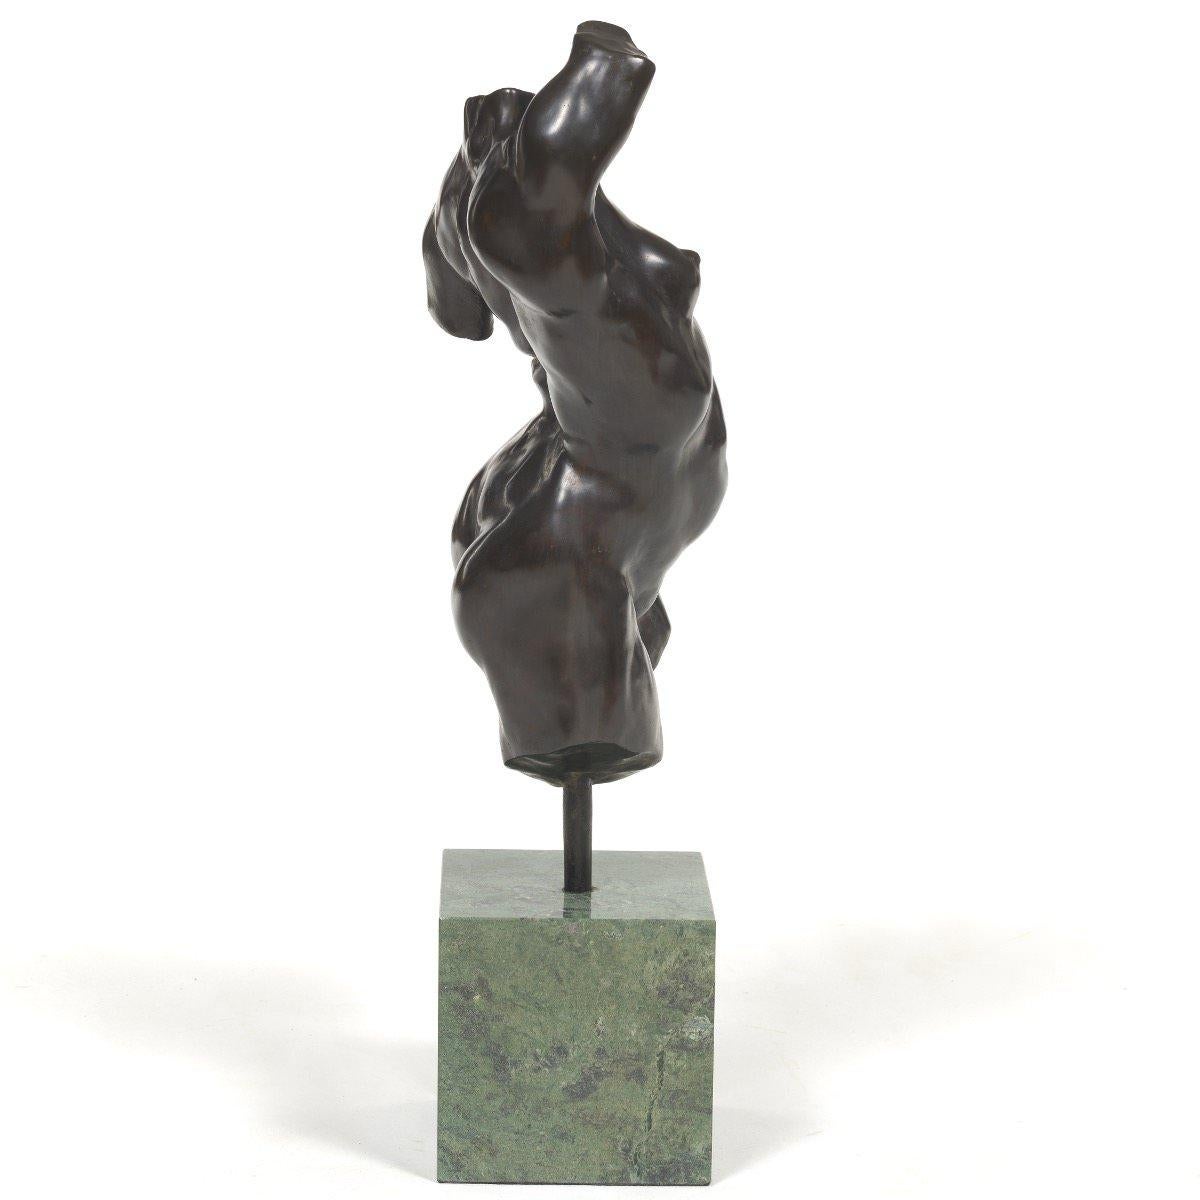 Alan Cottrill (Amerikaner, Ohio, geb. 1952)
Nackter weiblicher Torso, 1994
Bronze montiert auf grünem Marmorsockel
Signiert, datiert und nummeriert 14/20 verso auf dem Bein, mit Gießereistempel
17. in. h. x 6 in. b. x 6 in. t.
25,5 Zoll H. x 6 Zoll